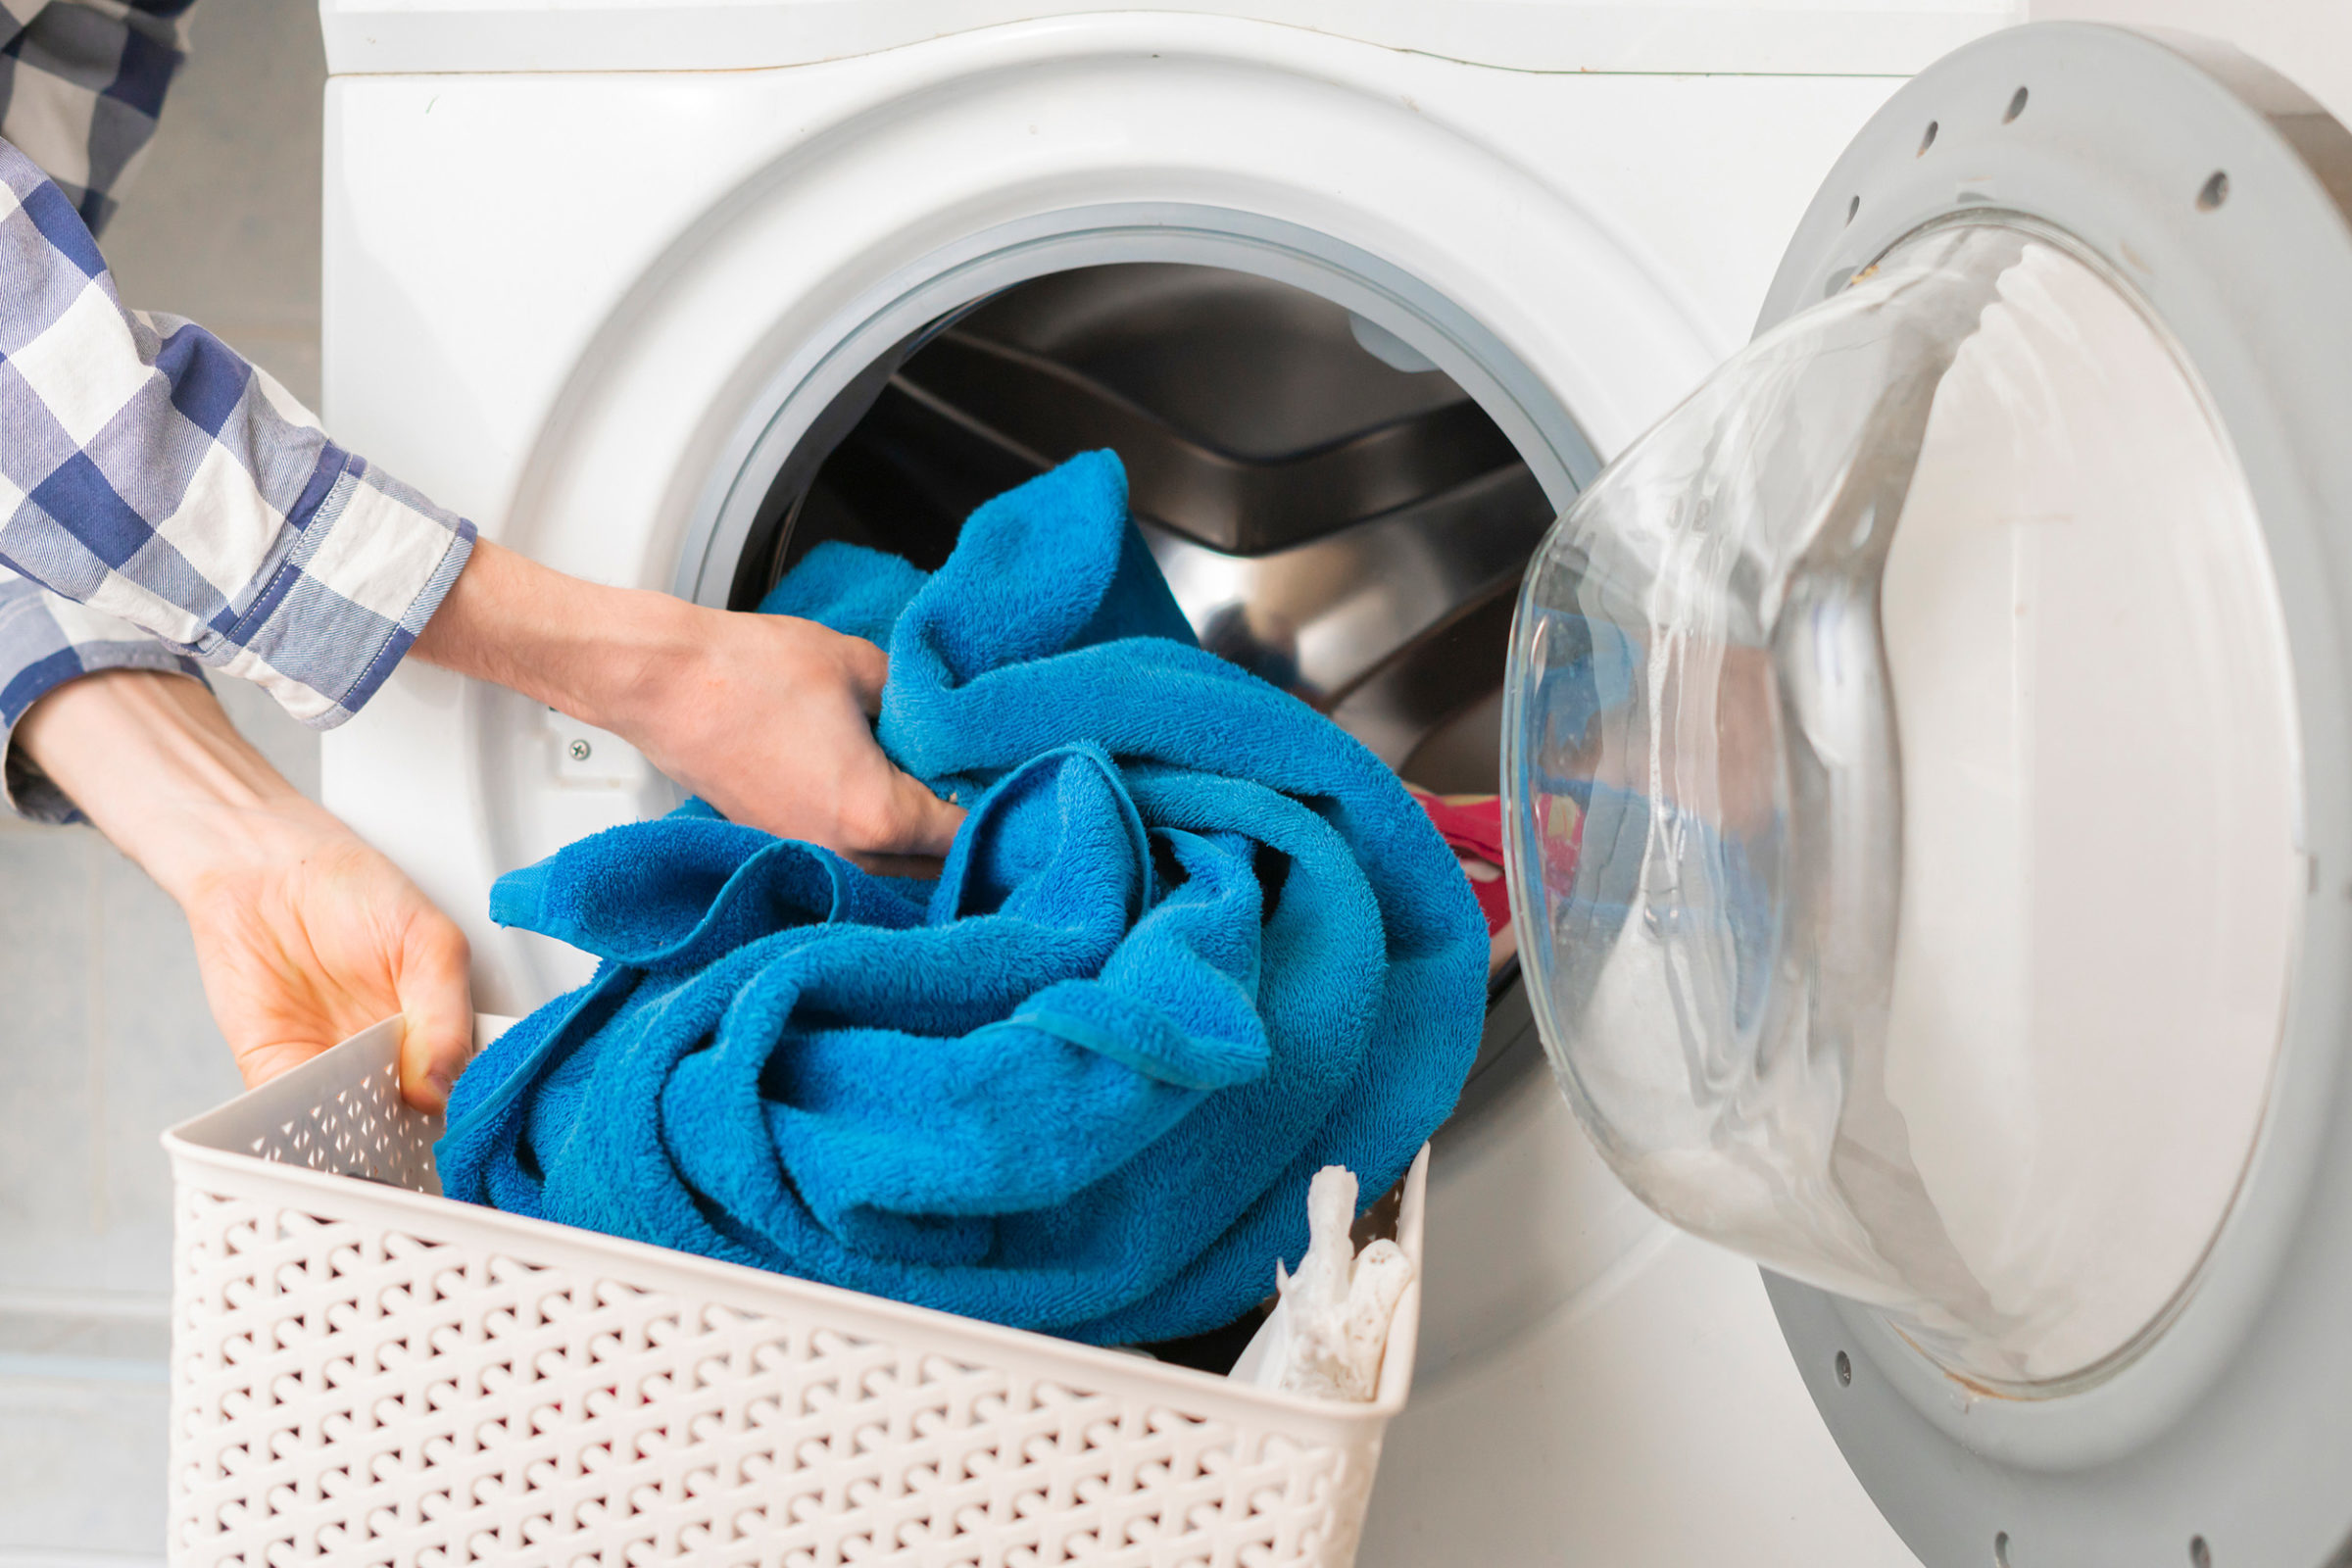 Waschkueche im Mehrfamilienhaus: Befuellen einer Waschmaschine mit einem blauen Handtuch